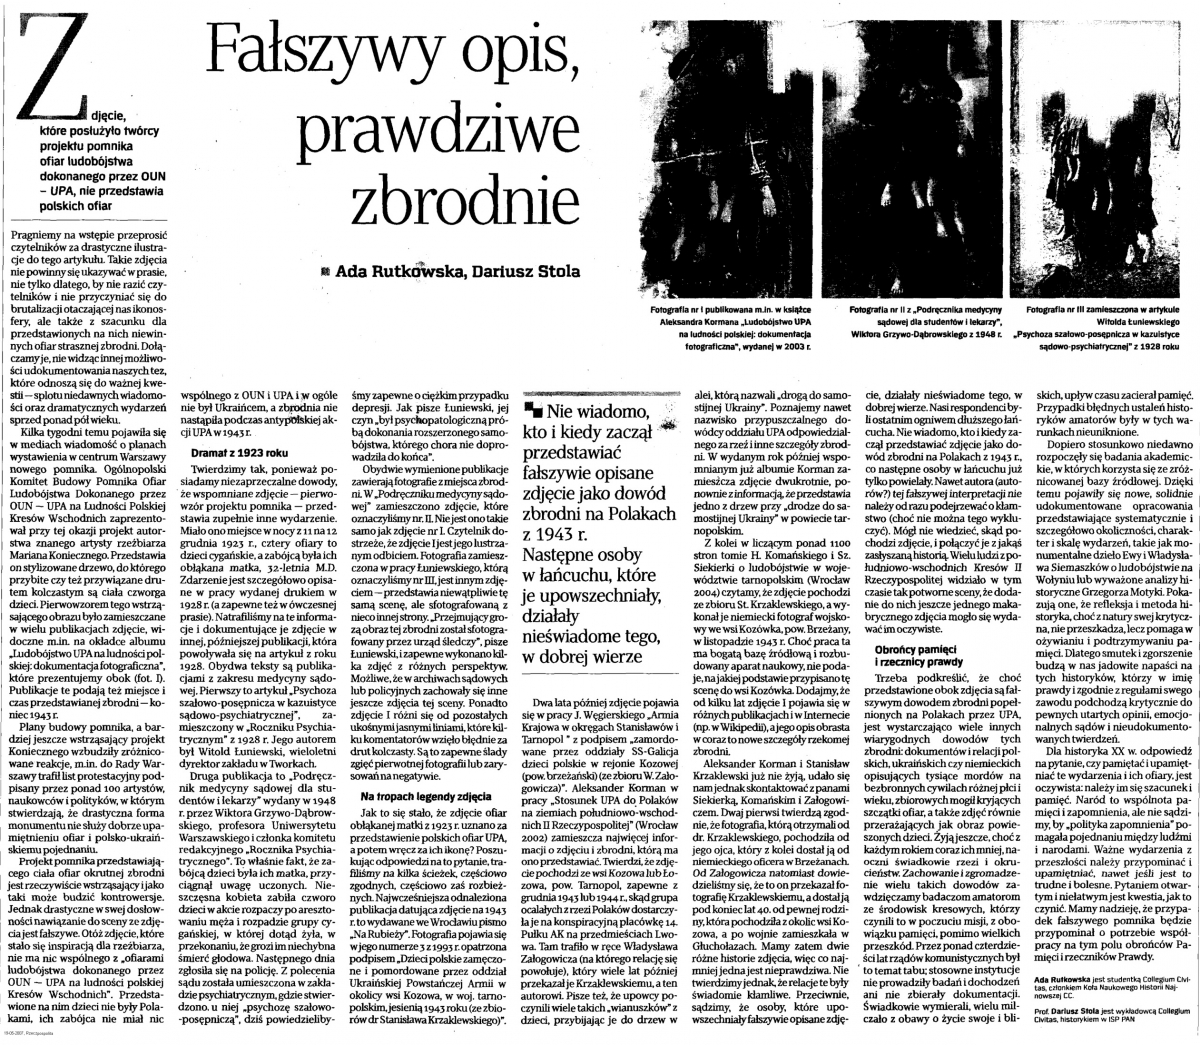 Фото преткновения: в Польше нашли ошибку в деле бандеровского геноцида